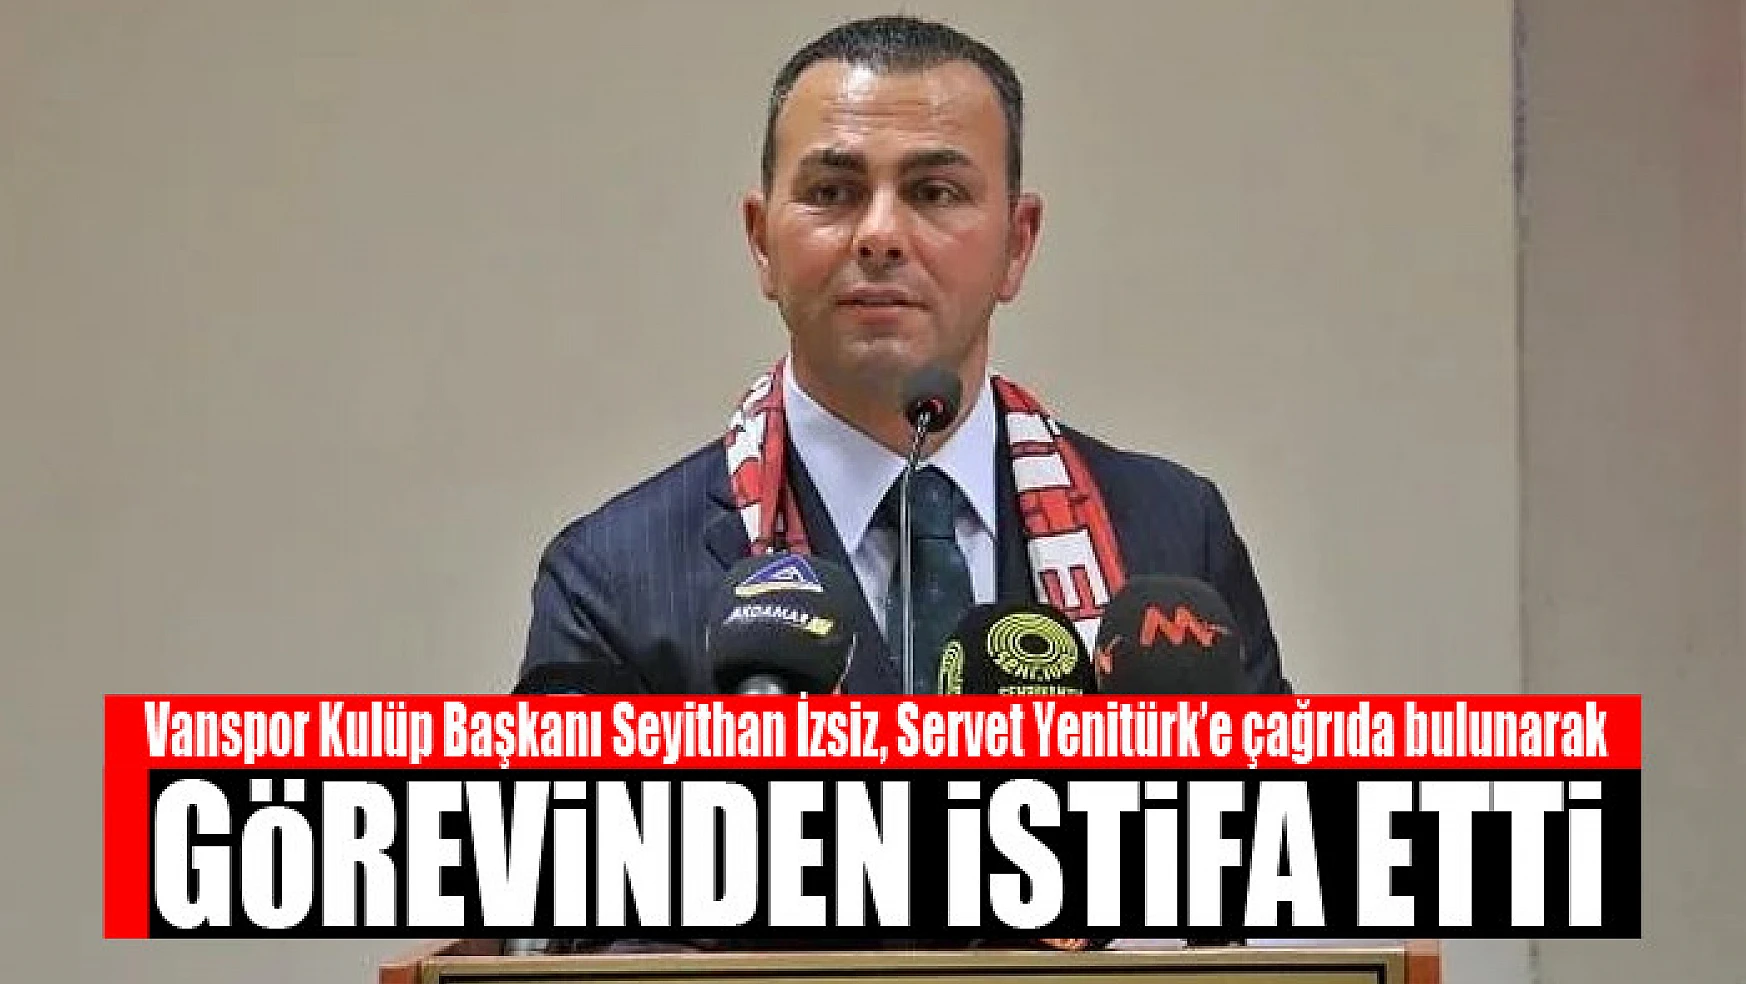 Vanspor Kulüp Başkanı Seyithan İzsiz istifa etti